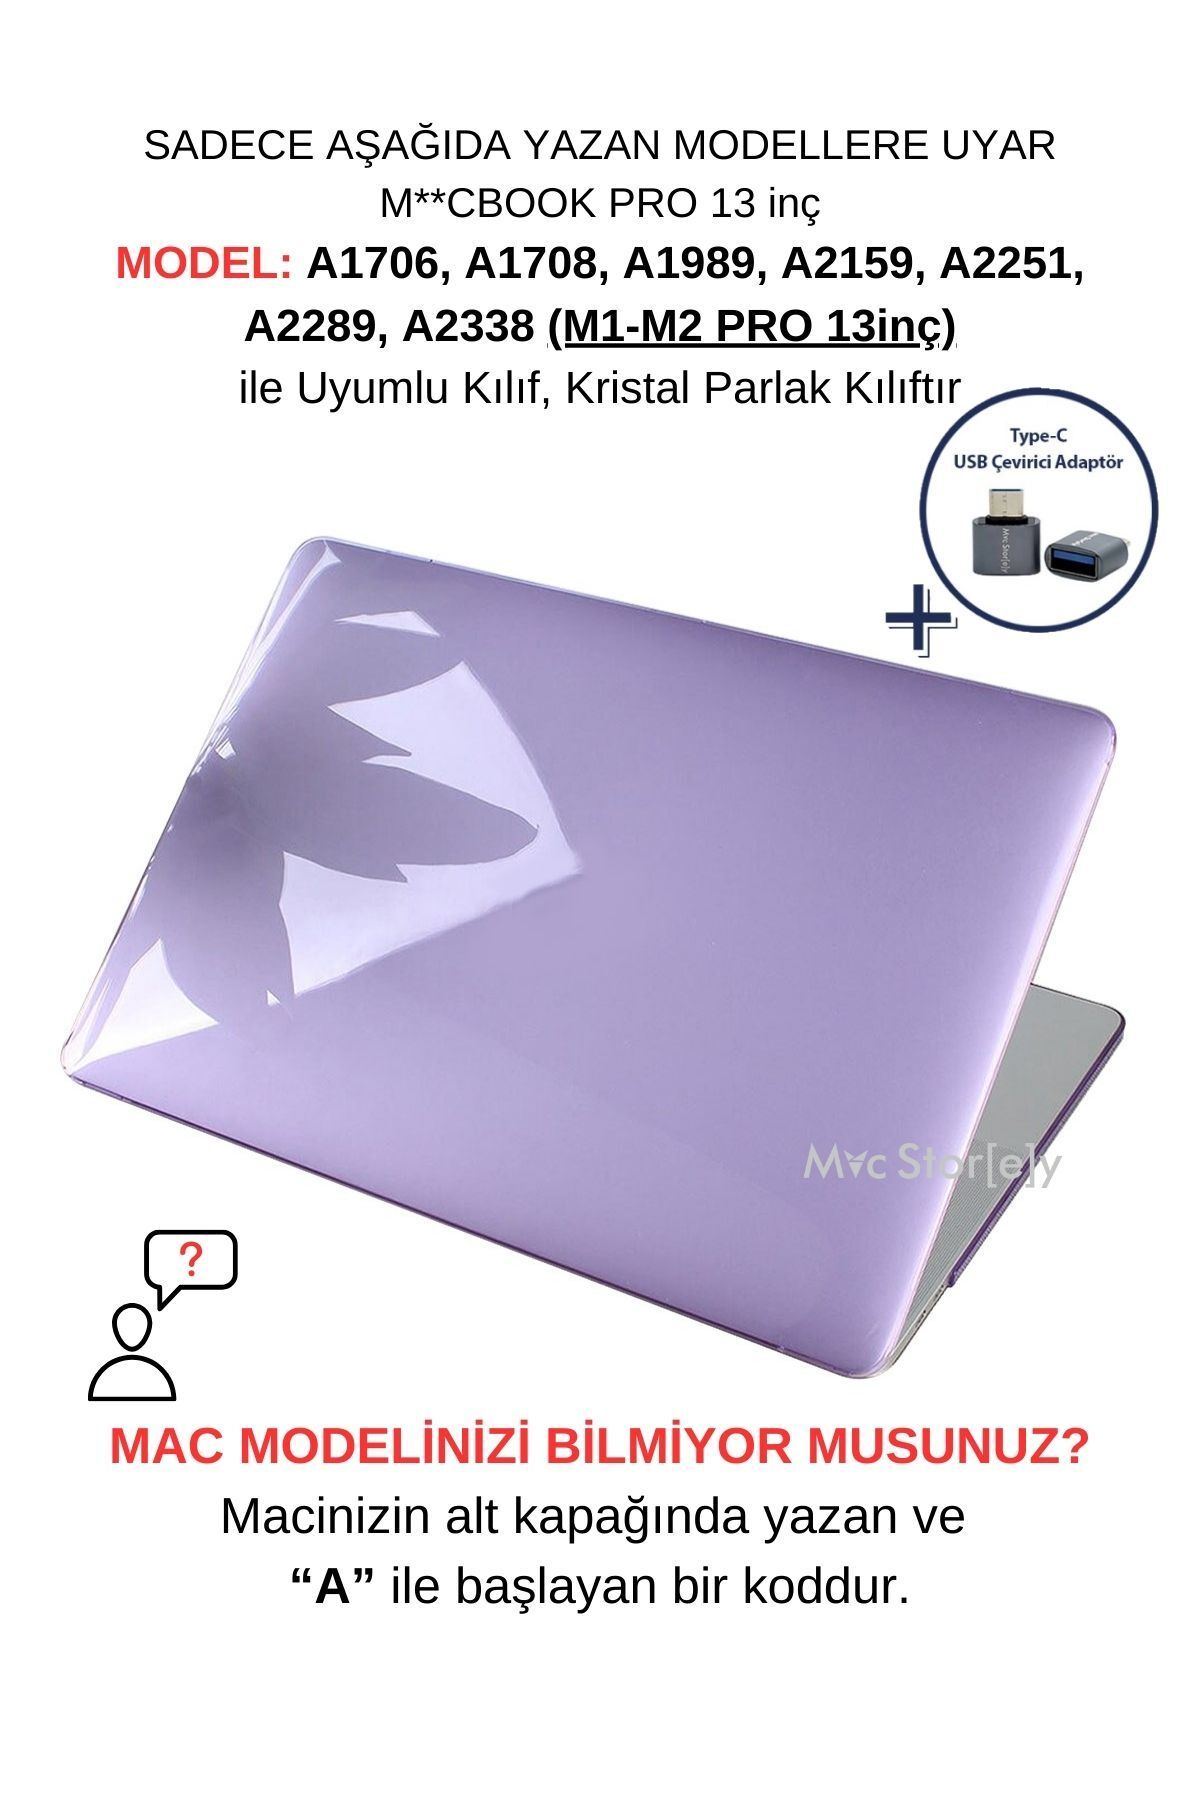 Mcstorey Macbook Pro Kılıf 13 Inç M1-m2 A1706 A1708 A1989 A2159 A2251 A2289 A2338 Ile Uyumlu Kristal